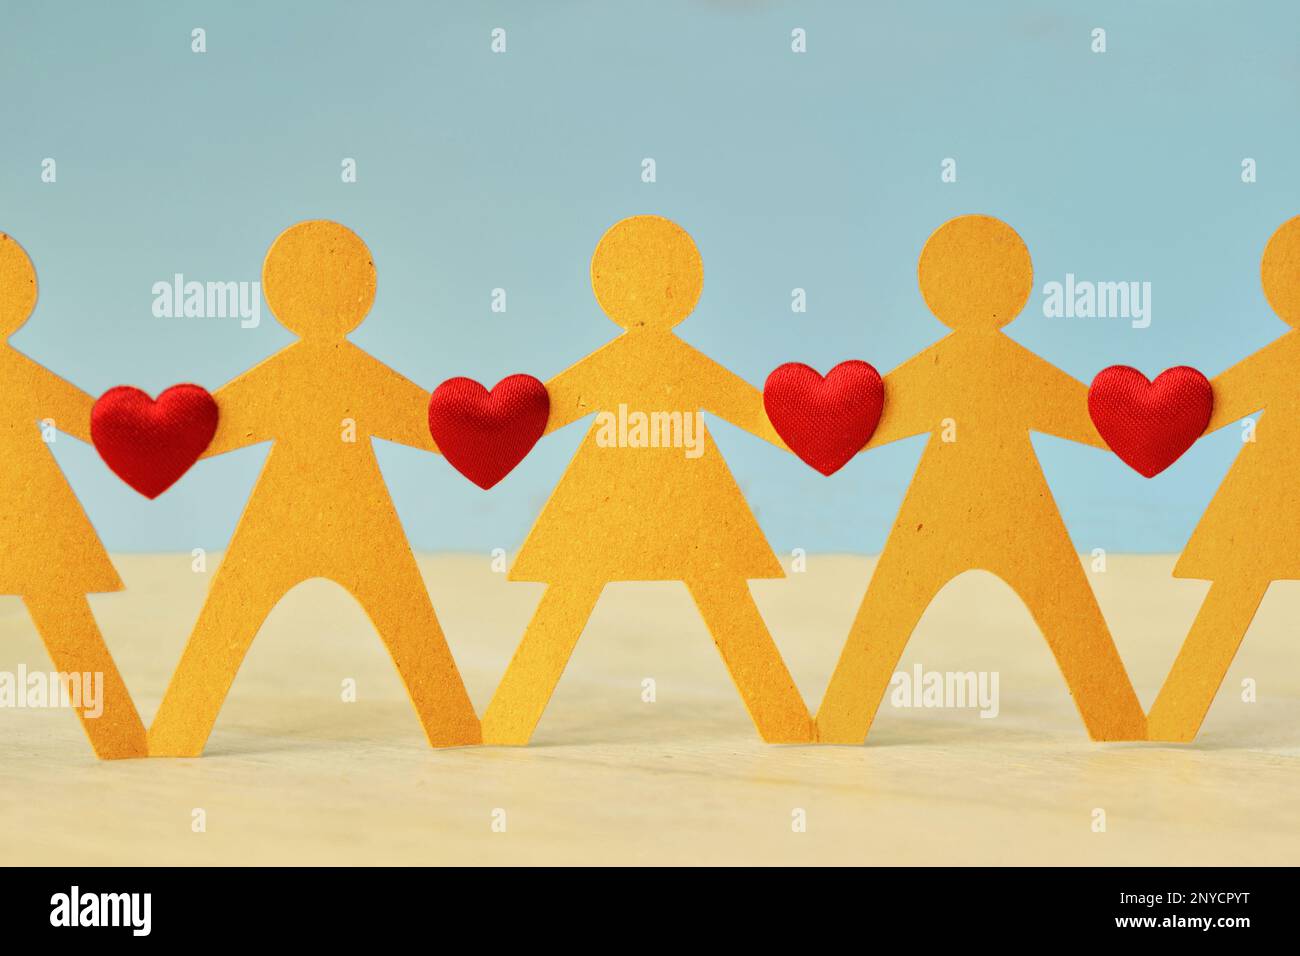 Papiermenschenkette mit Herzen - Konzept von Liebe und Einheit Stockfoto